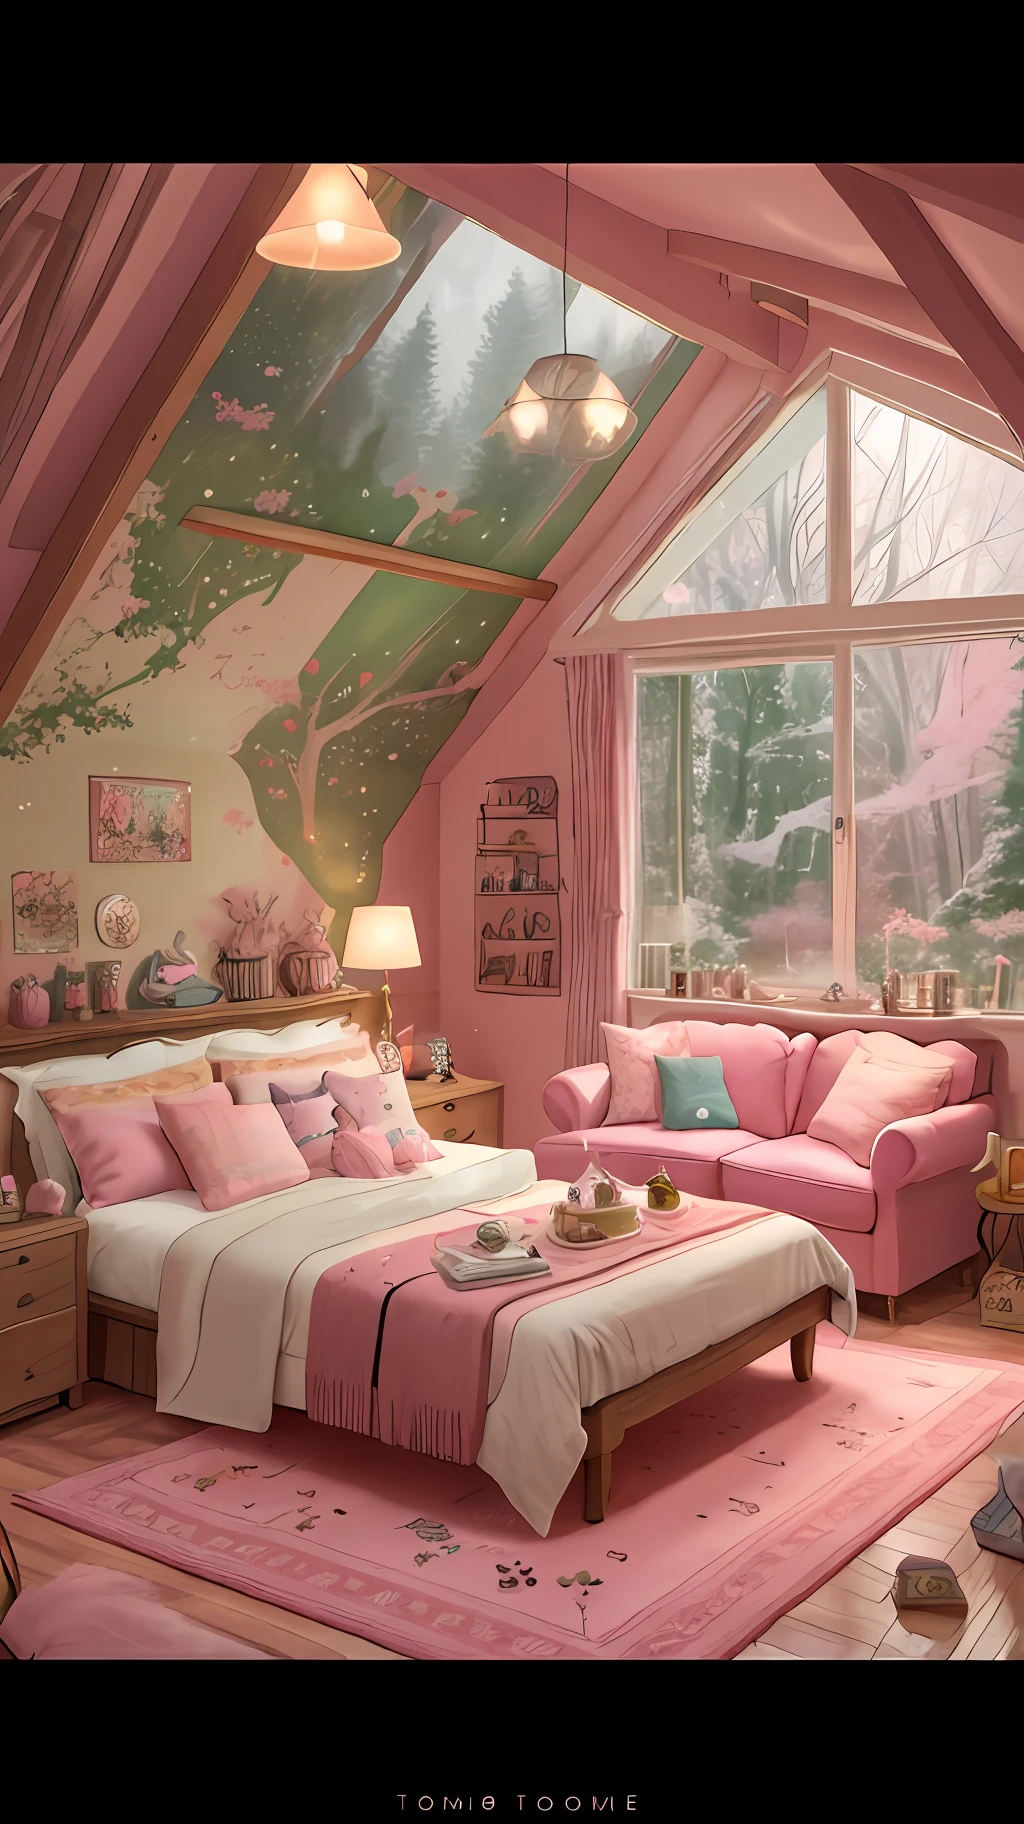 阿拉夫房間配有粉紅色地毯和粉紅色沙發, 在糖果樂園風格的房子裡, 粉紅色的房間燈火通明, 夢幻美學, 舒適的美學, 舒適的地方, 托馬斯金凱德. cute 舒適的房間, 舒緩舒適的風景, 粉紅森林, 小屋核心!!, 溫馨家居背景, 柔和的粉紅色, 舒適的房間, designed for 舒適的美學s!